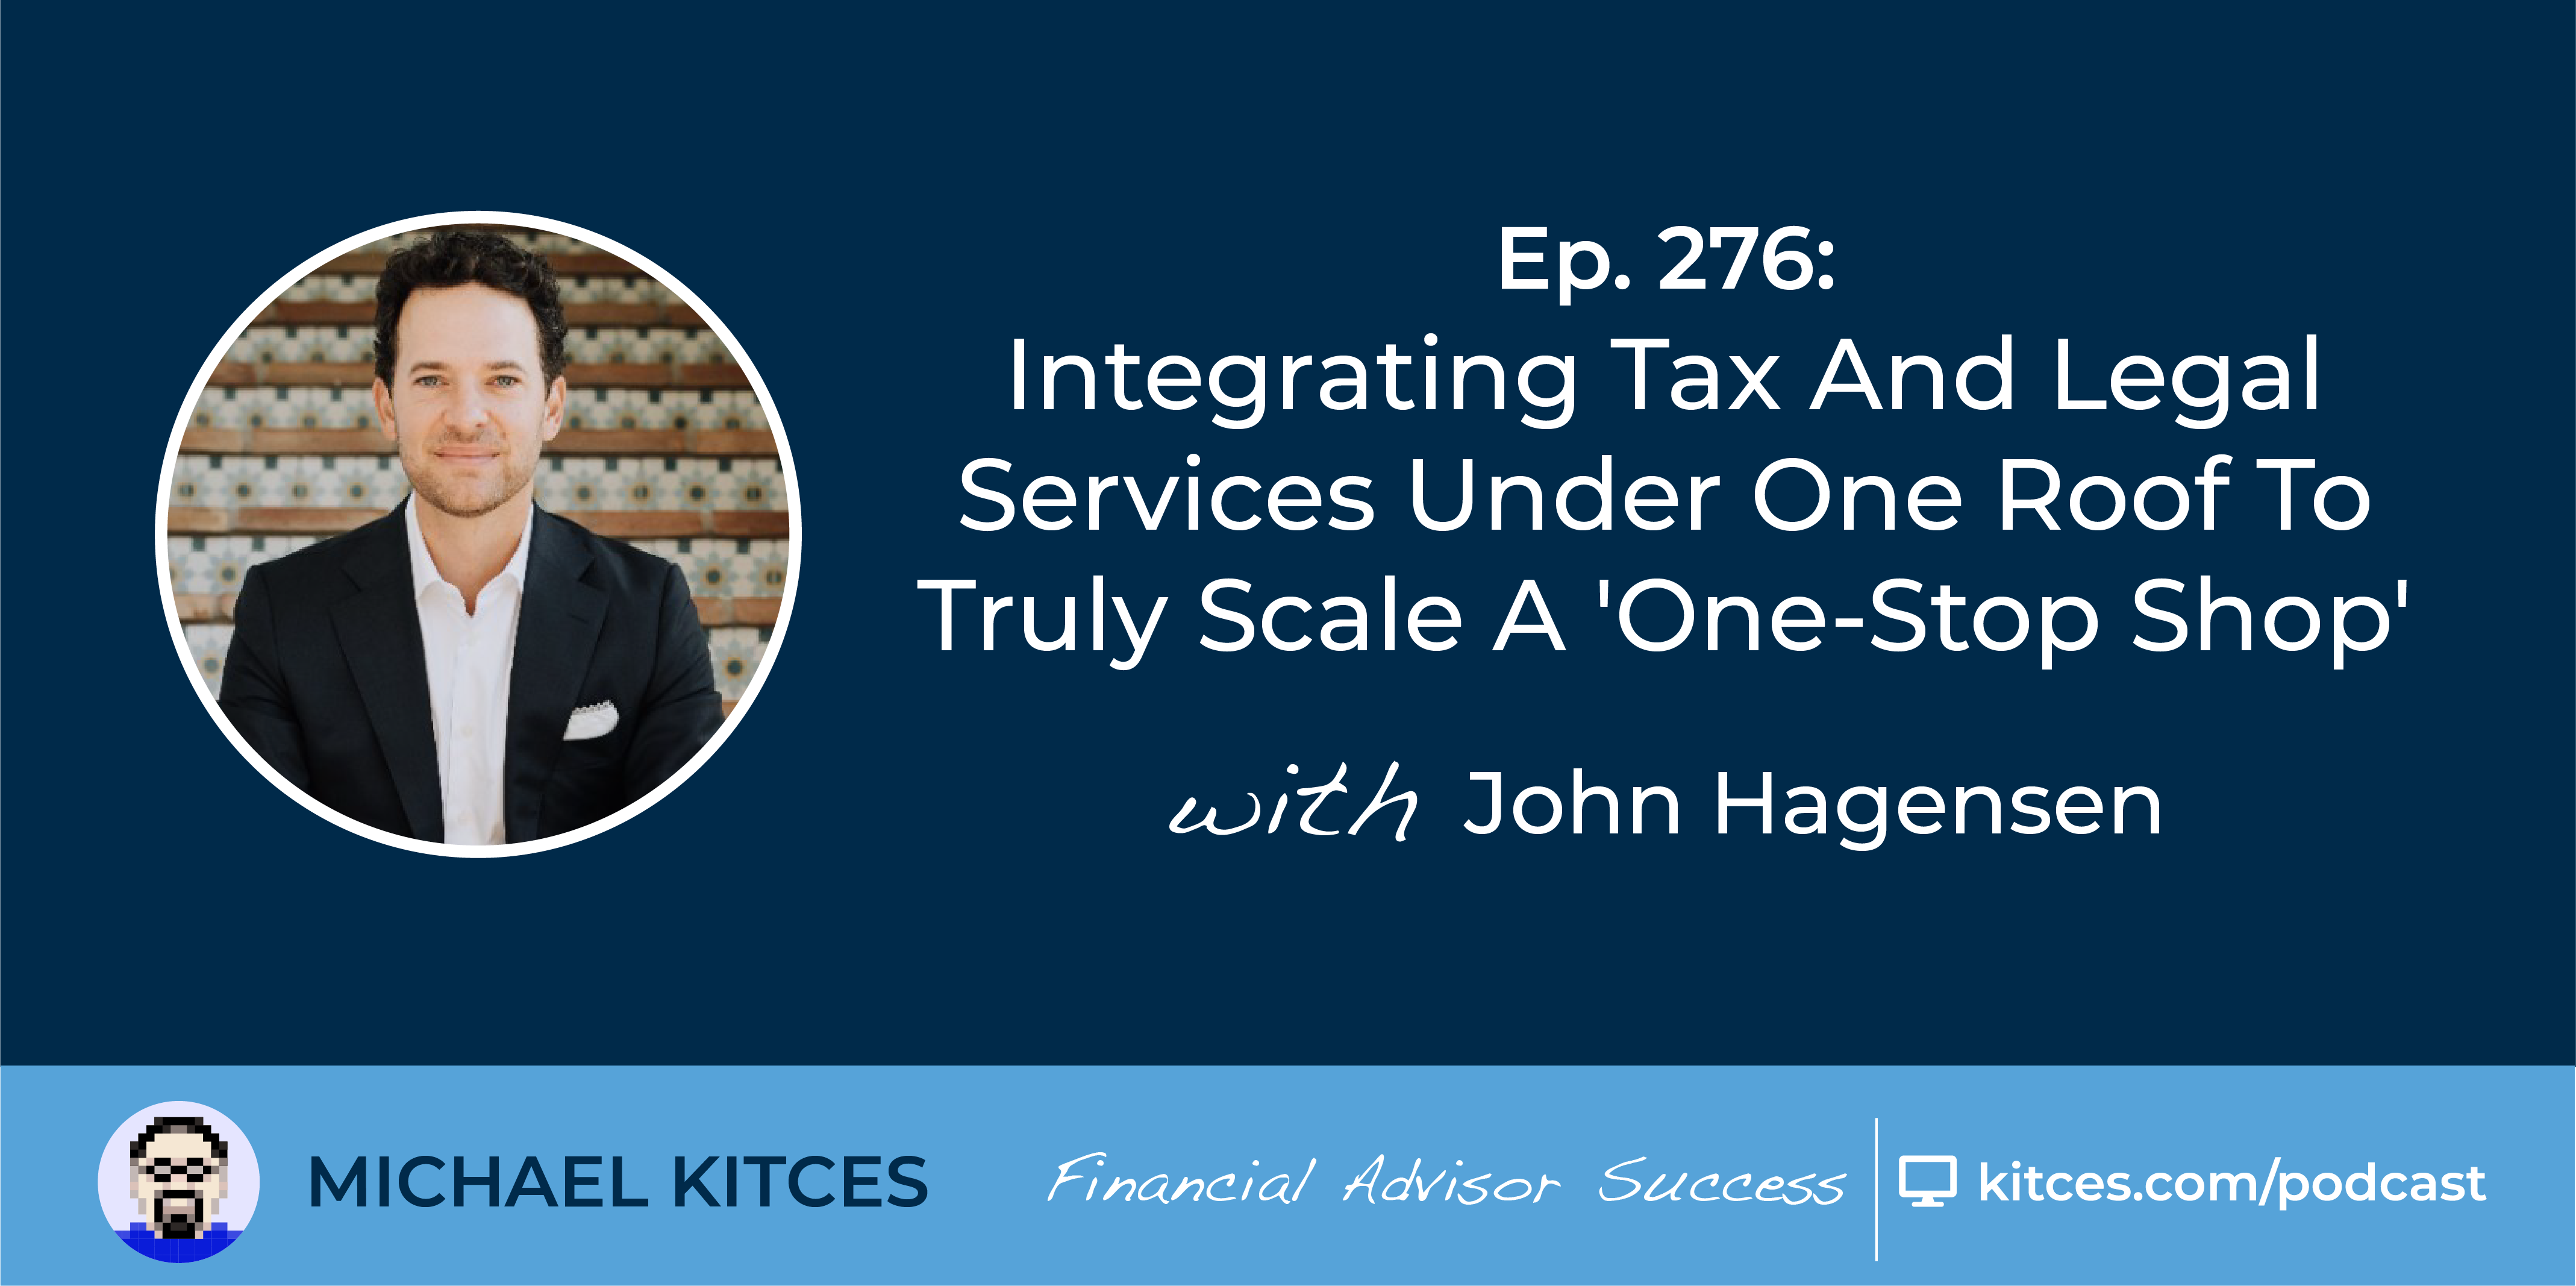 John Hagensen Podcast Social Image FAS 276